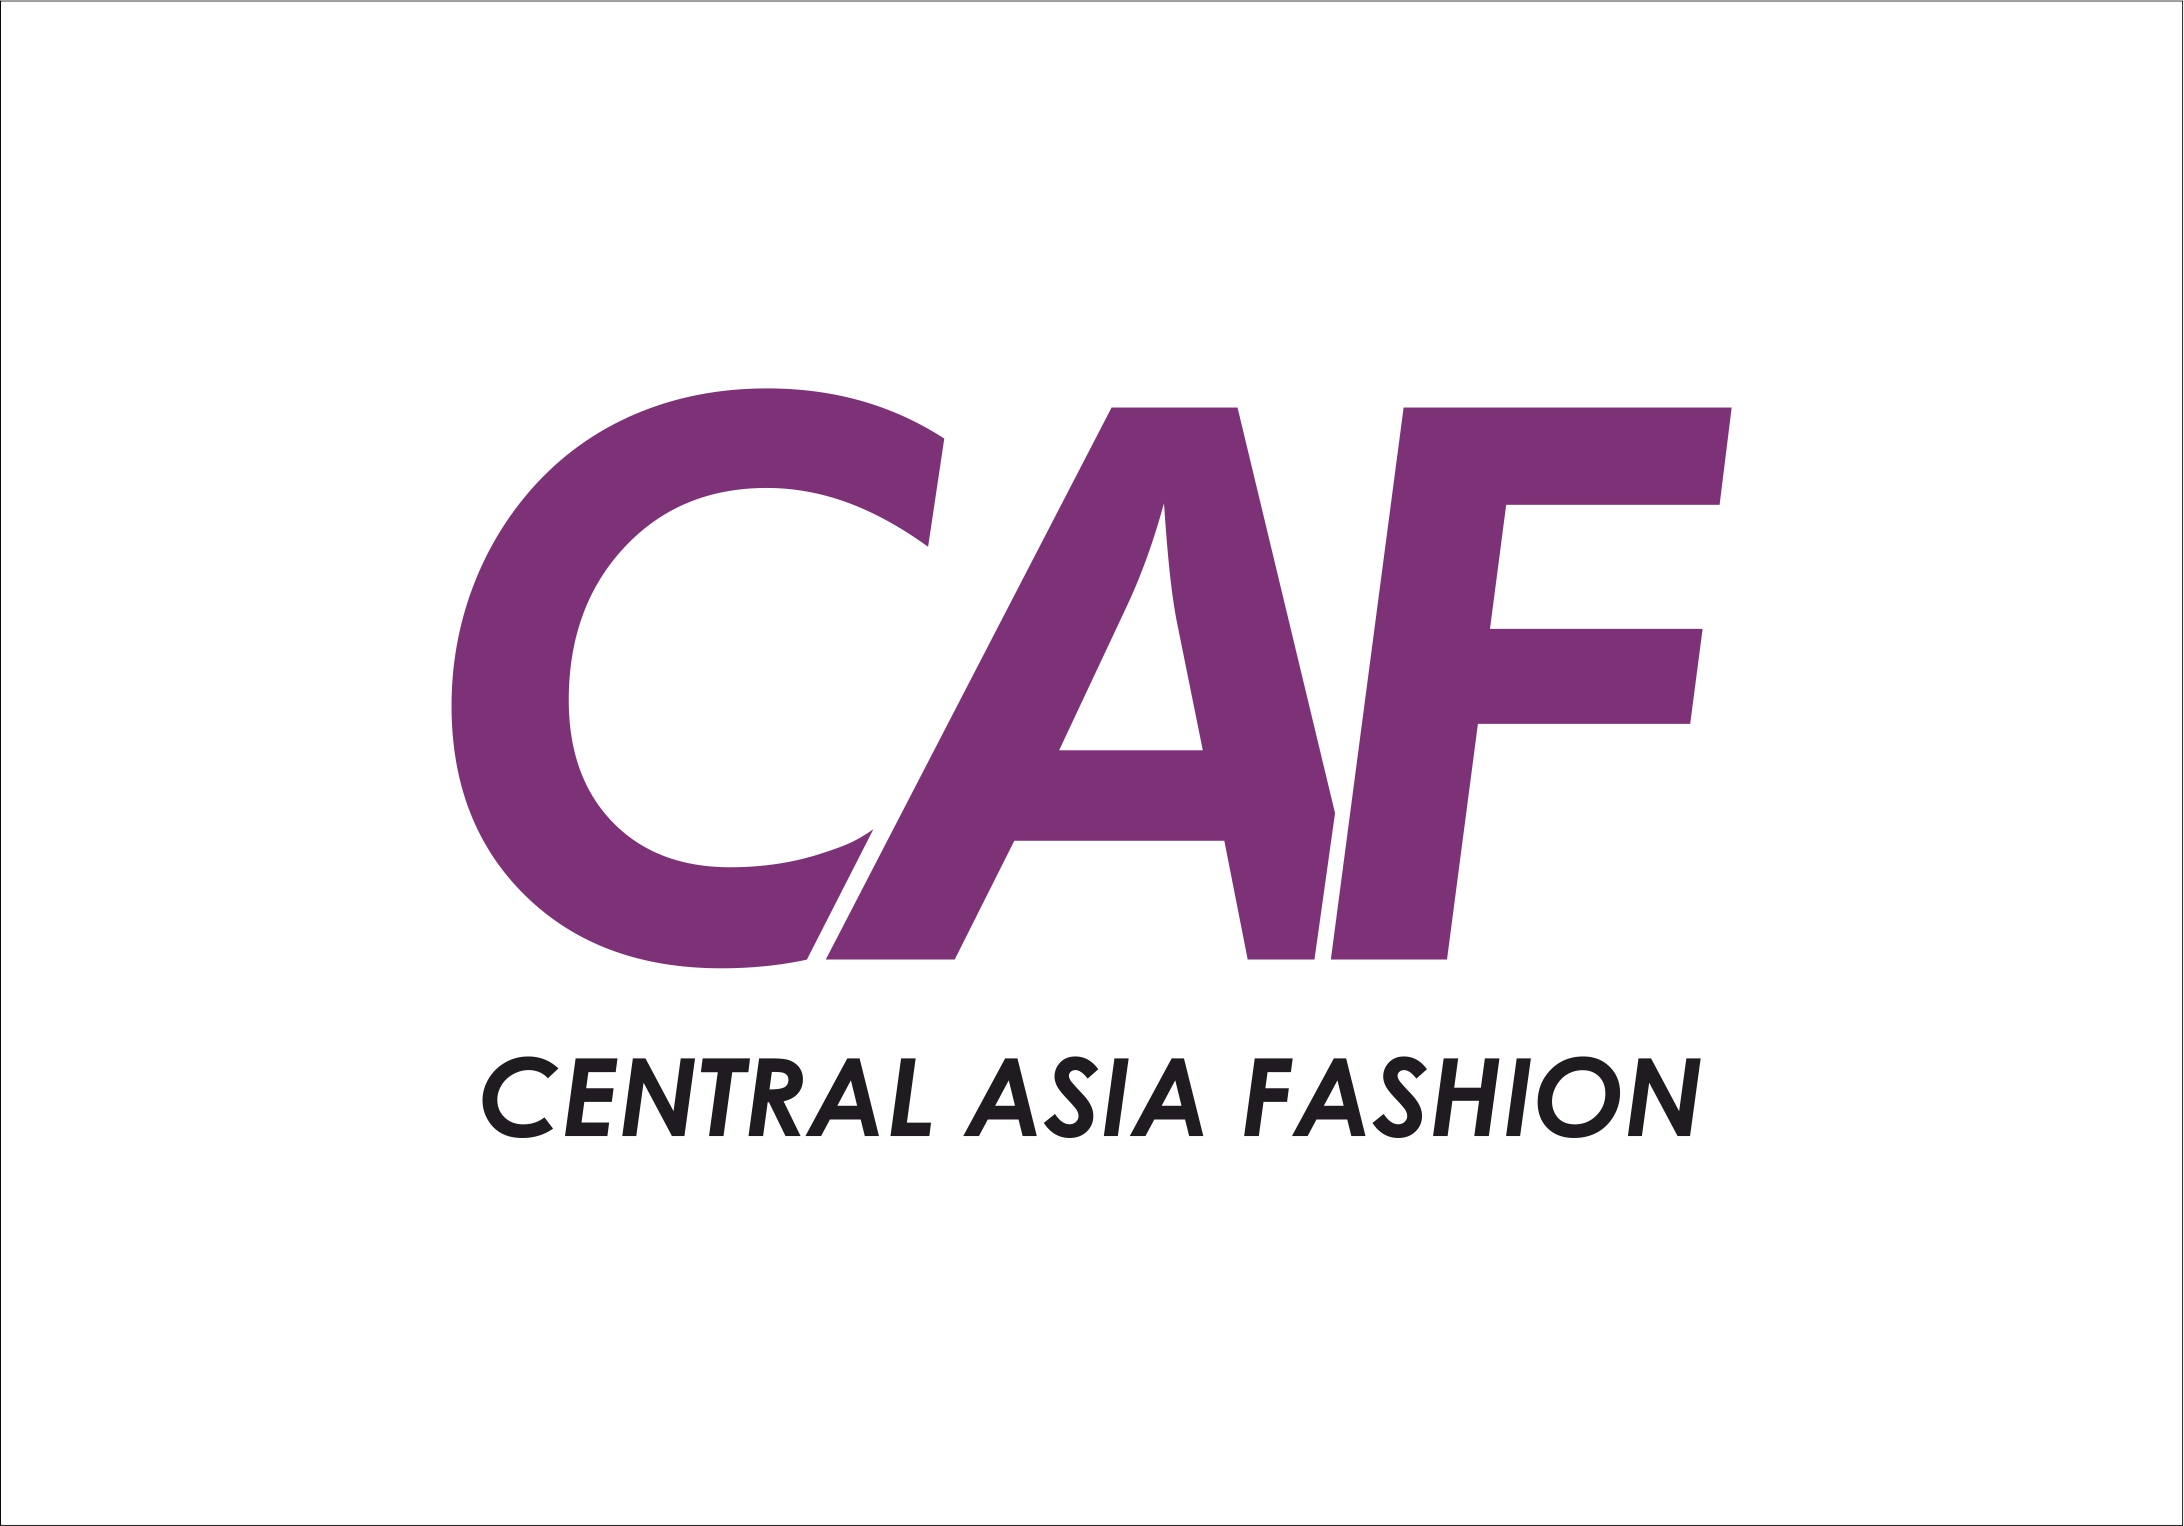 Central Asia Fashion